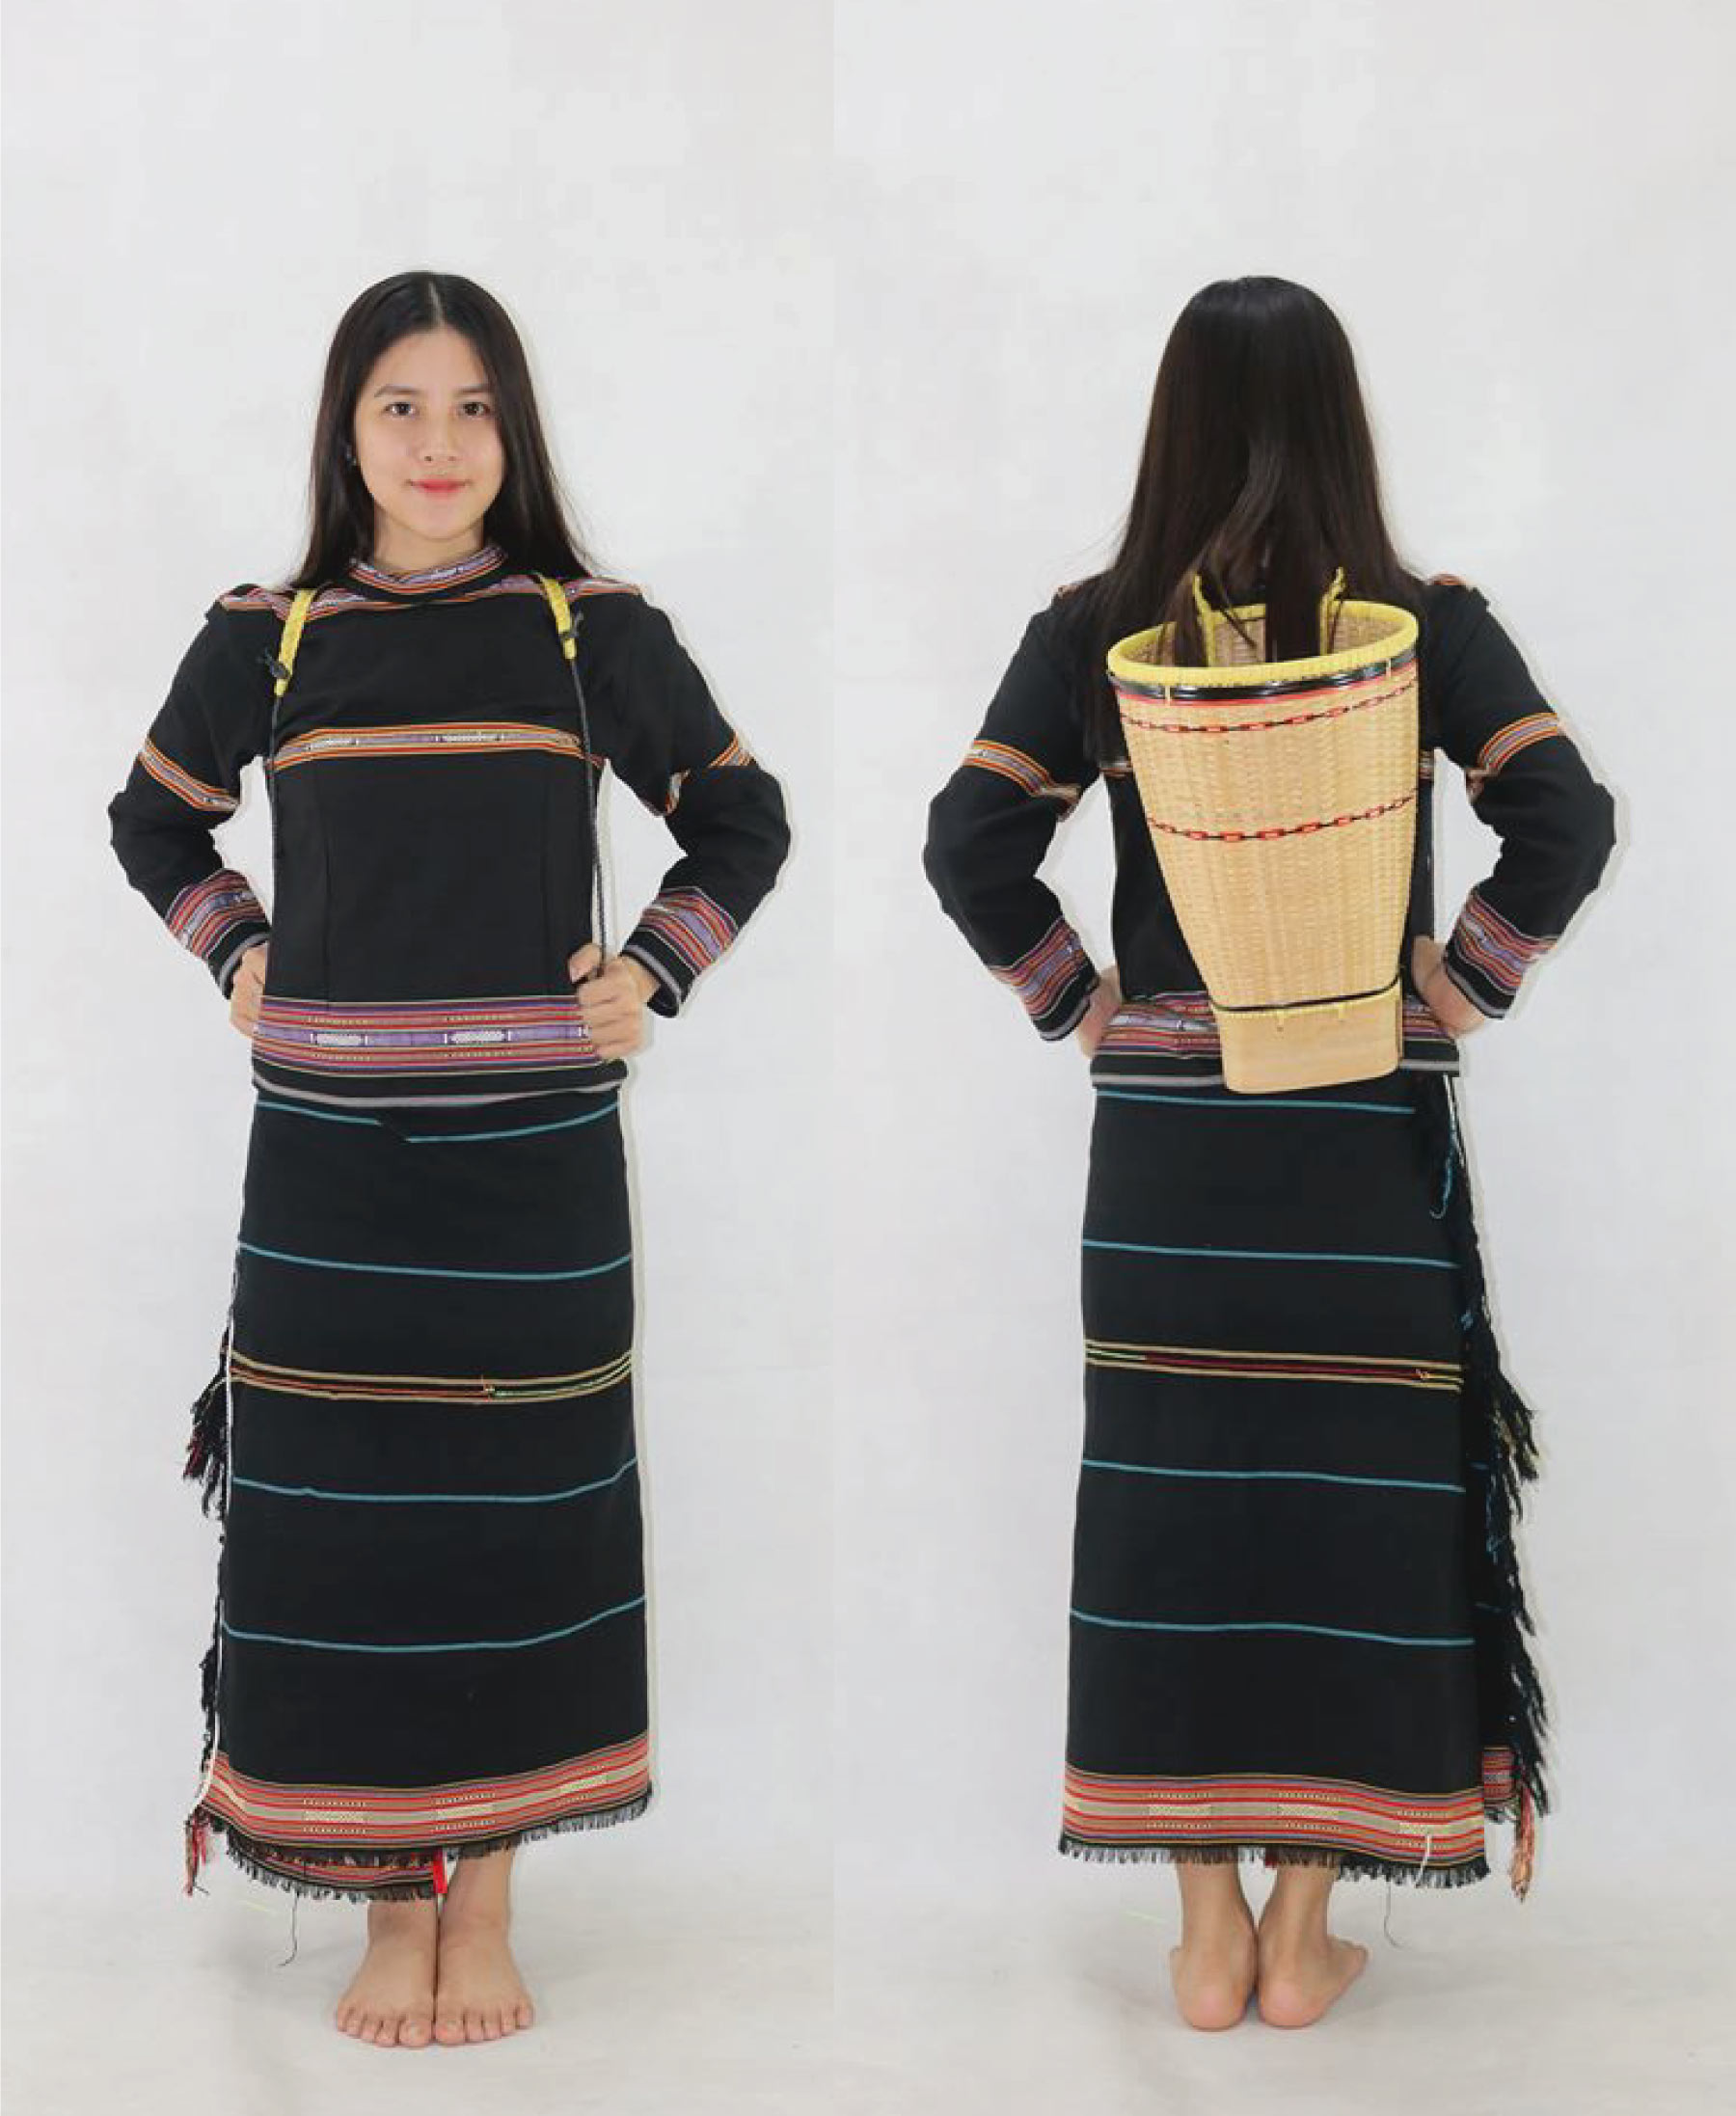 Trang phục truyền thống của phụ nữ Ê đê bao gồm váy tấm và áo chui